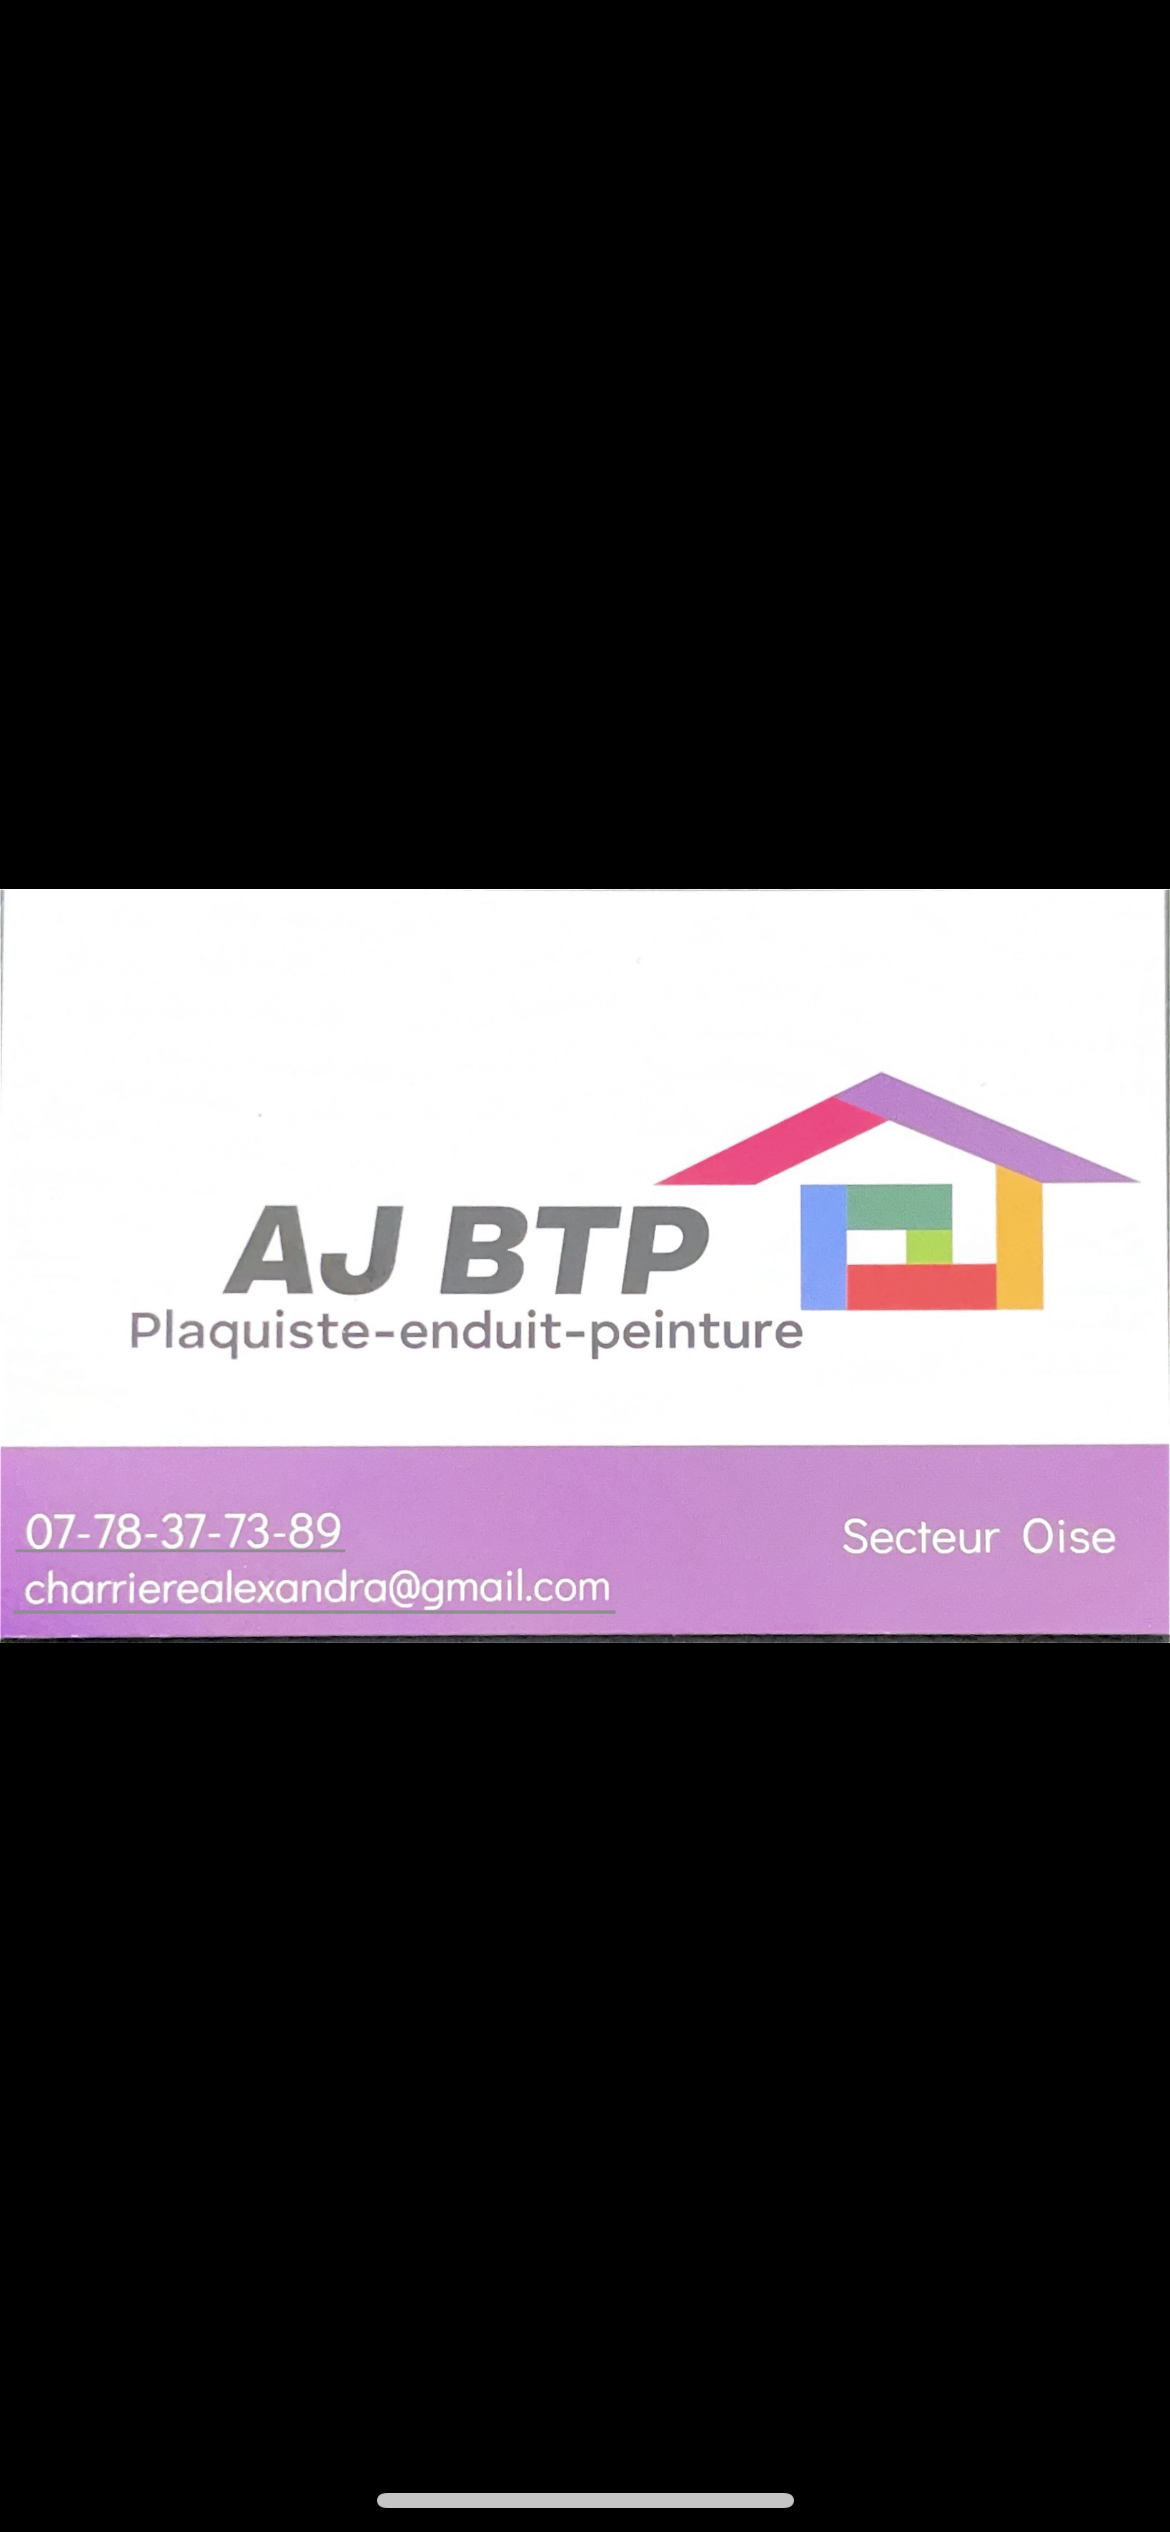 Logo de AJ BTP, société de travaux en Fourniture et pose de faux plafonds